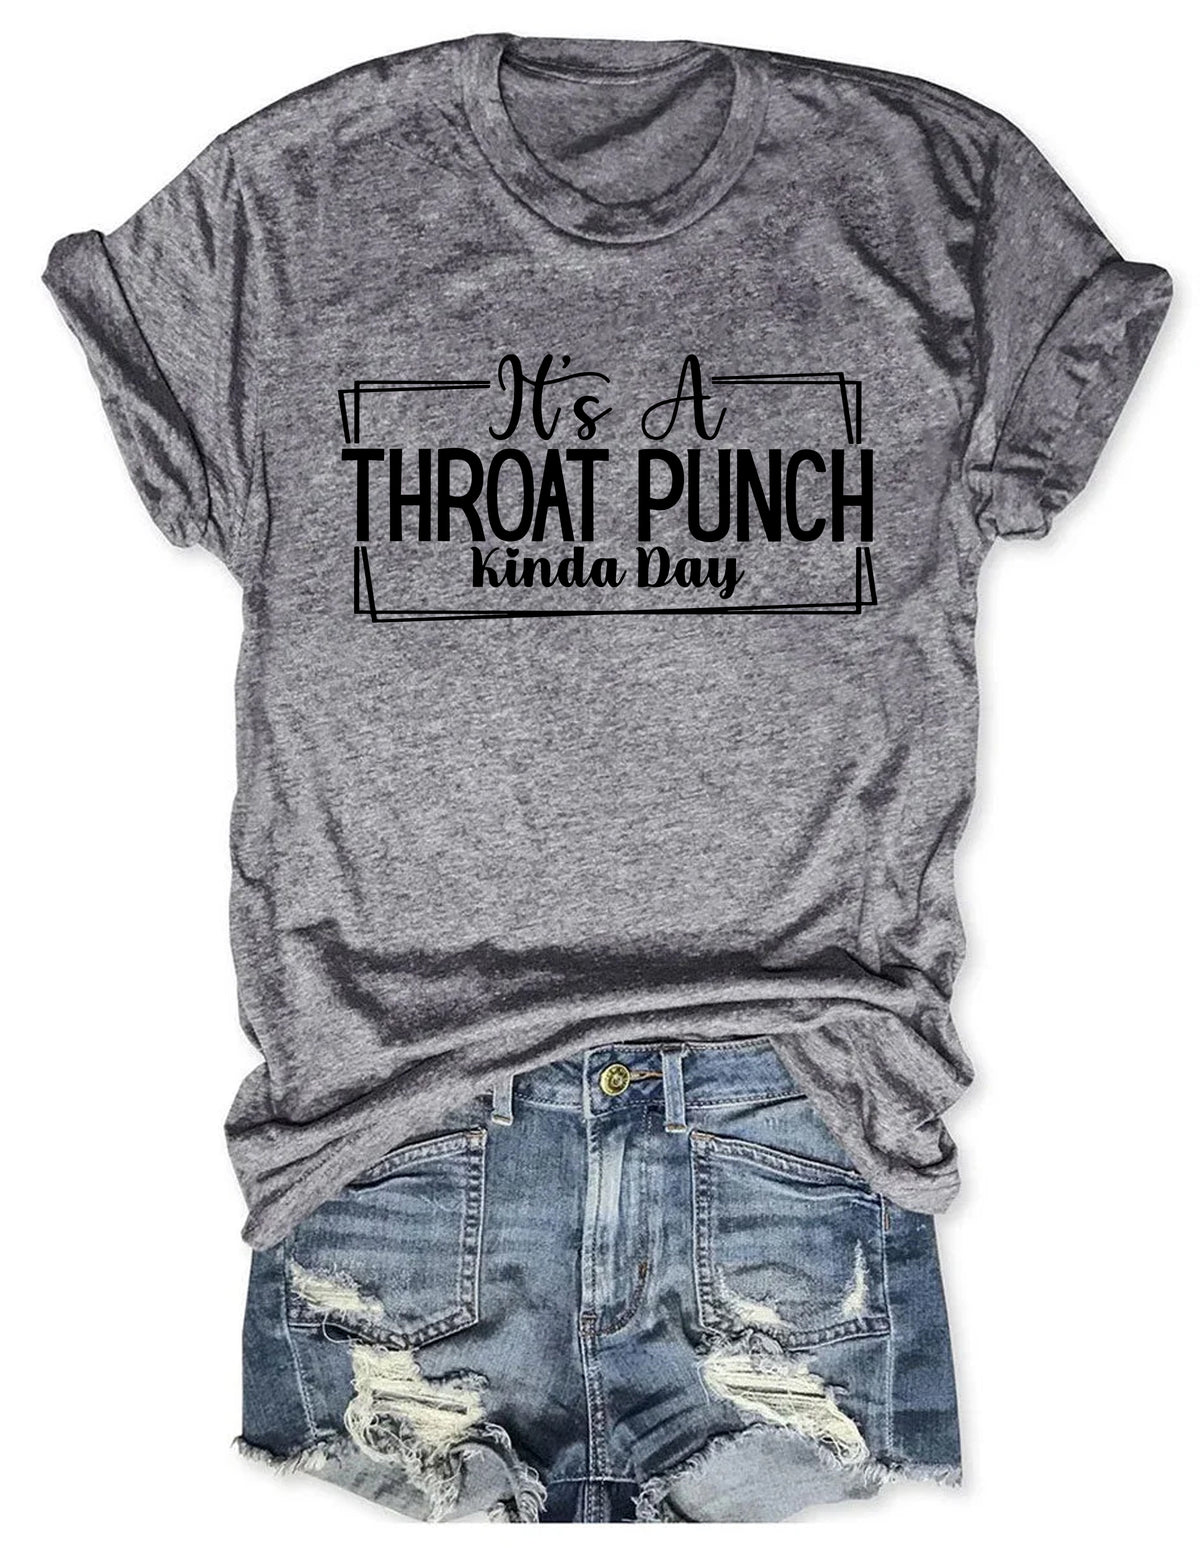 Es ist ein Throat Punch Kinda Day T-Shirt 